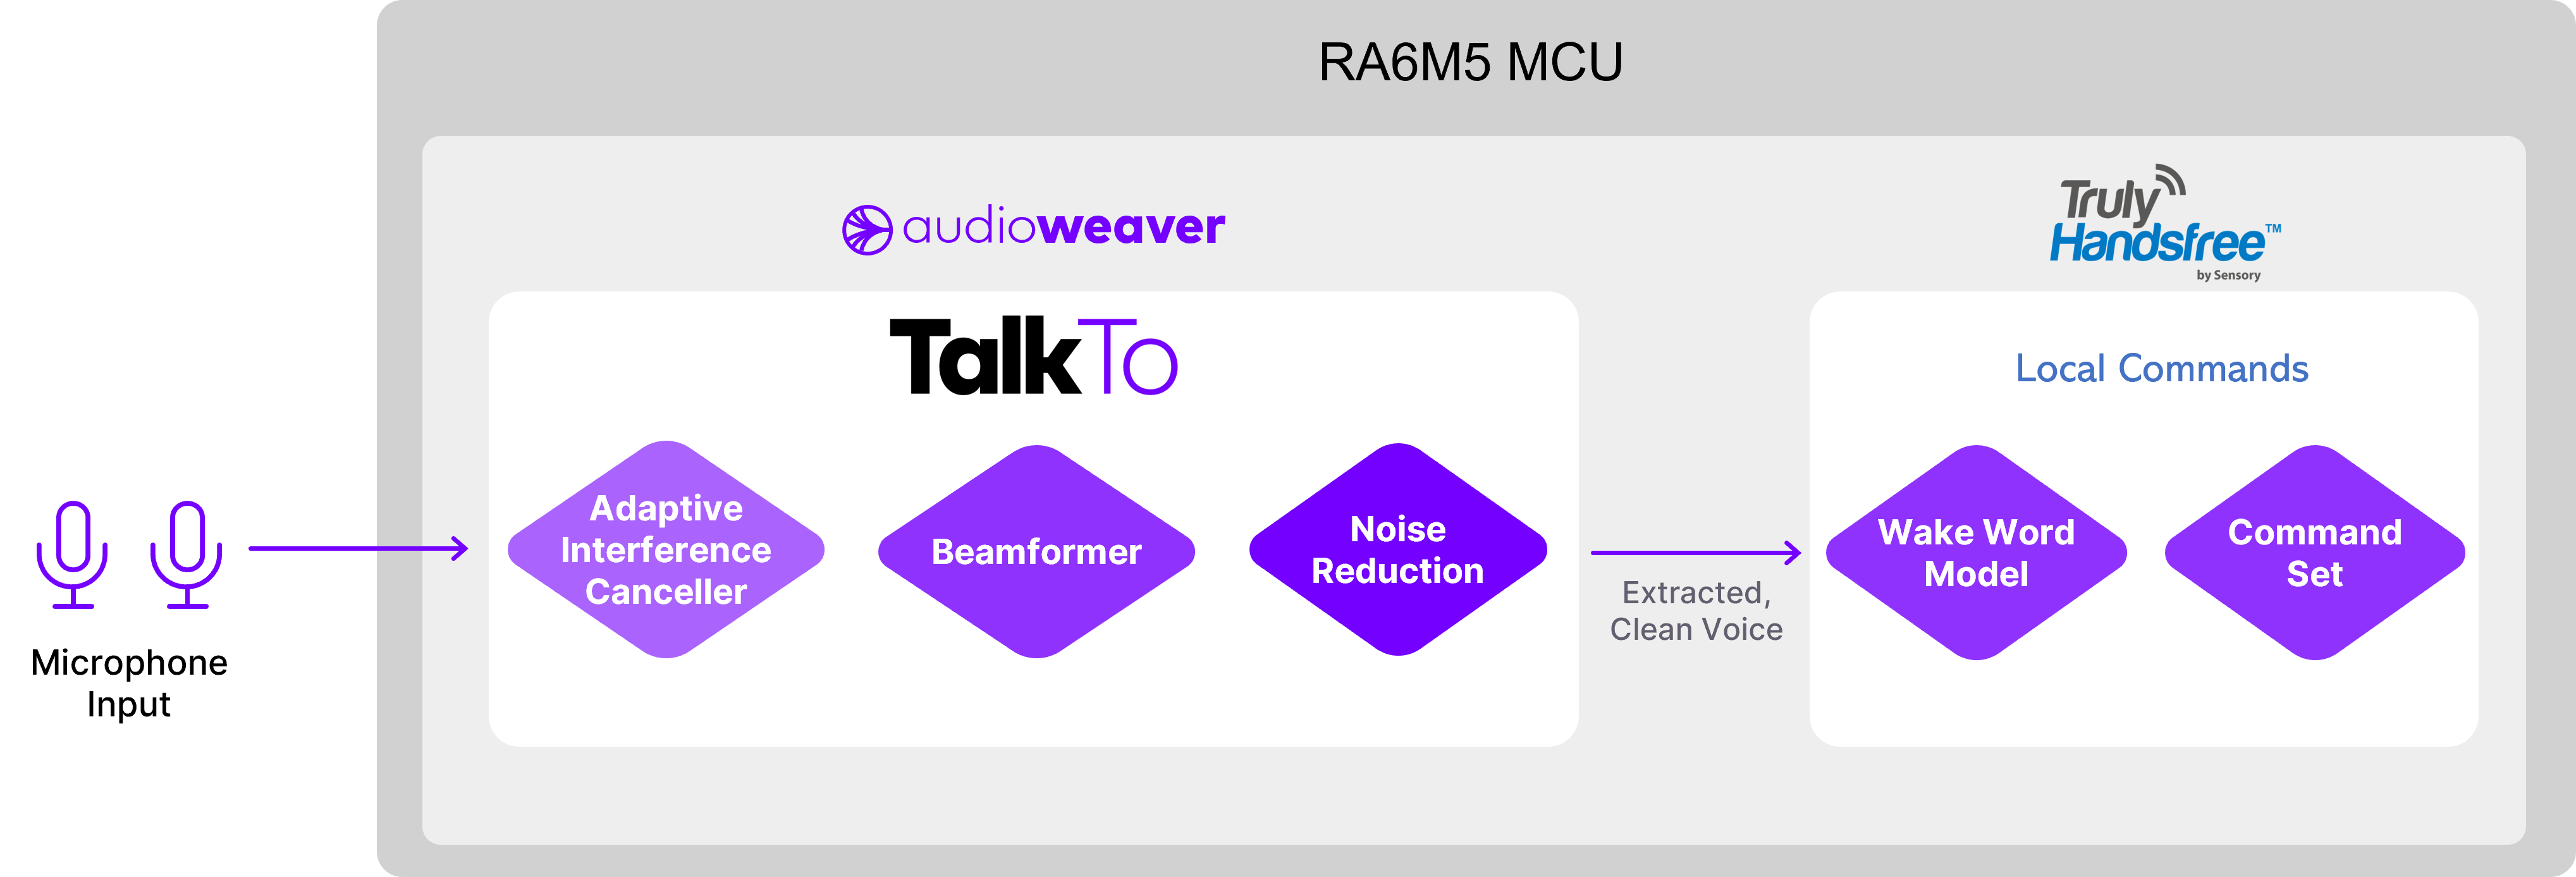 Renesas RA6M5 MCU Diagram